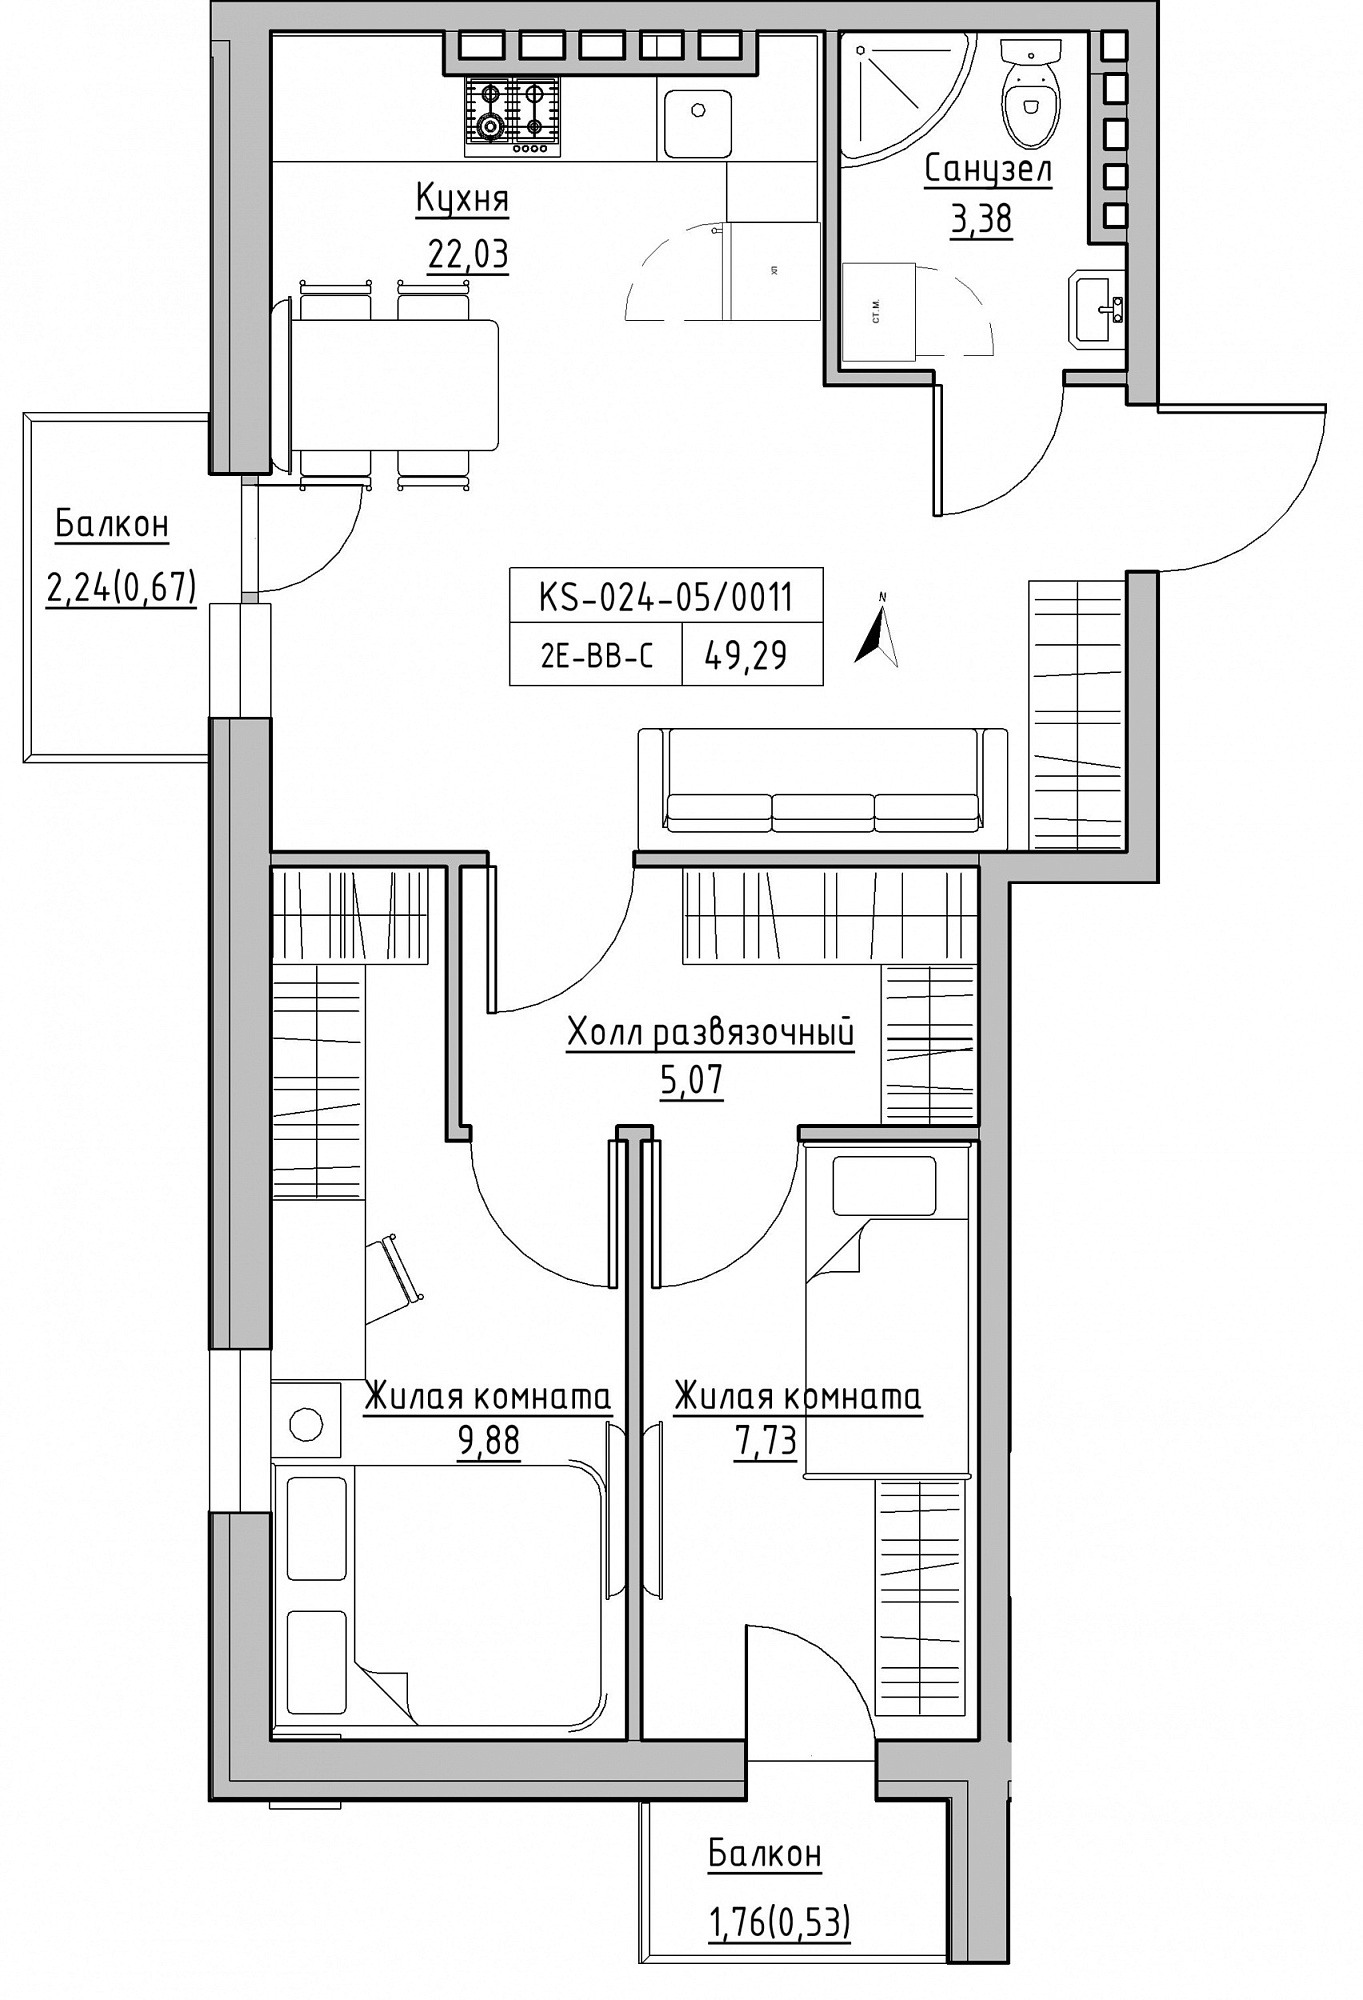 Планування 2-к квартира площею 49.29м2, KS-024-05/0011.